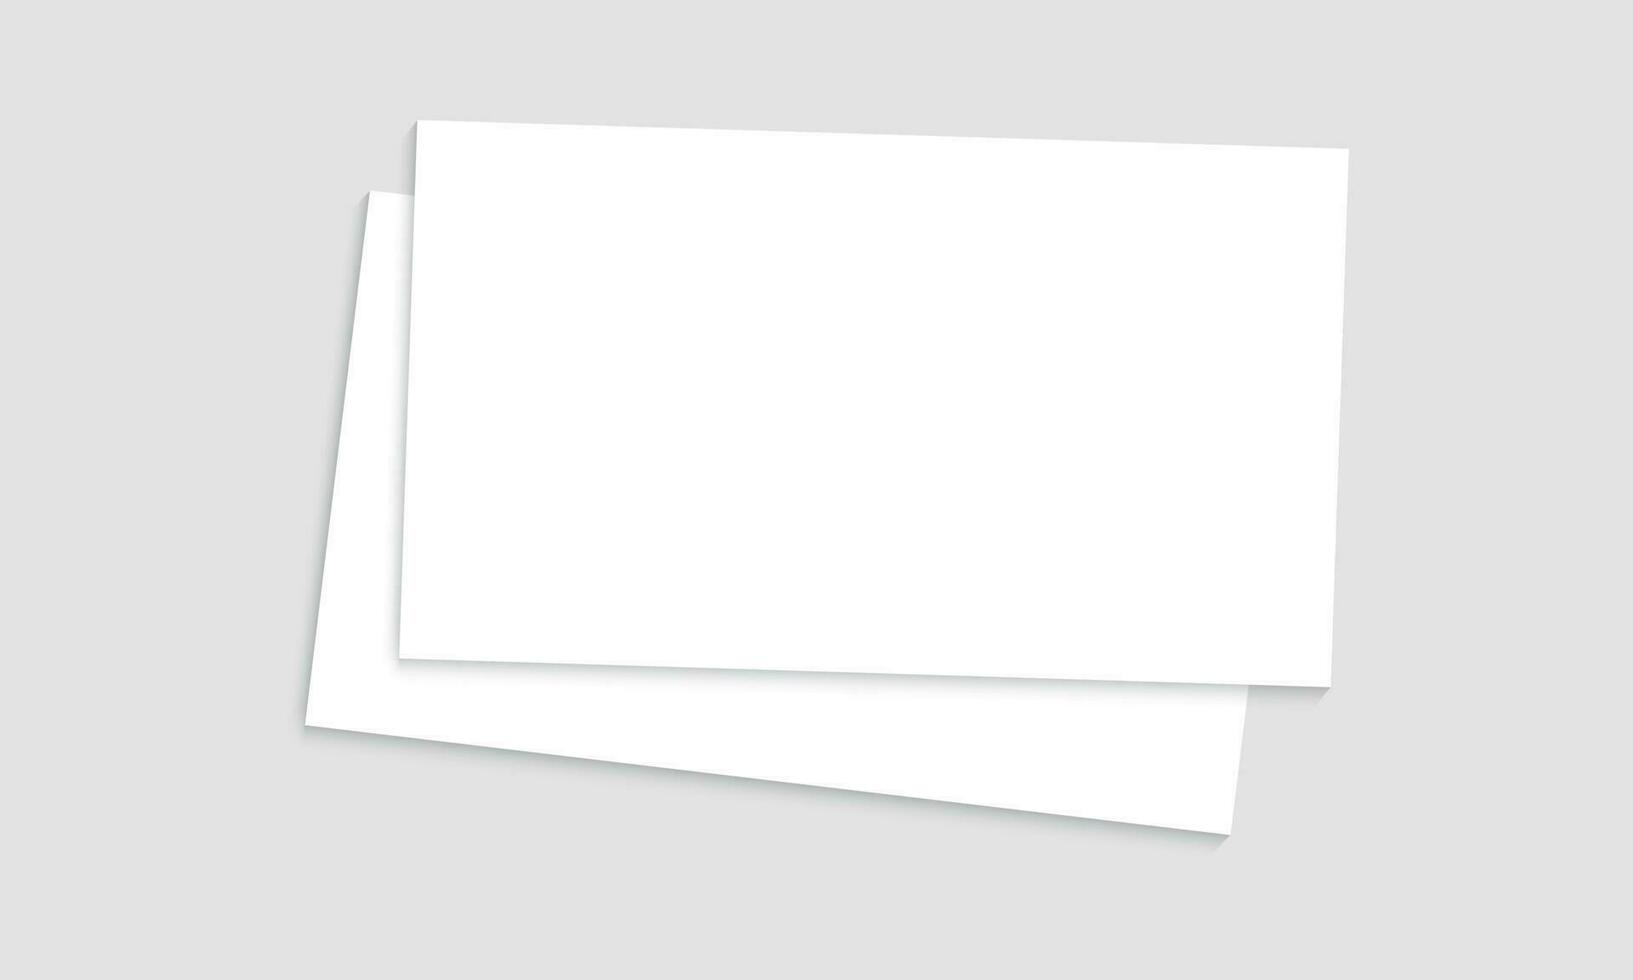 Vektor Weiß Blatt von Papier. realistisch leer a4 Format Papier Vorlage mit Schatten. Flyer, Abdeckung, Broschüre Attrappe, Lehrmodell, Simulation Design.